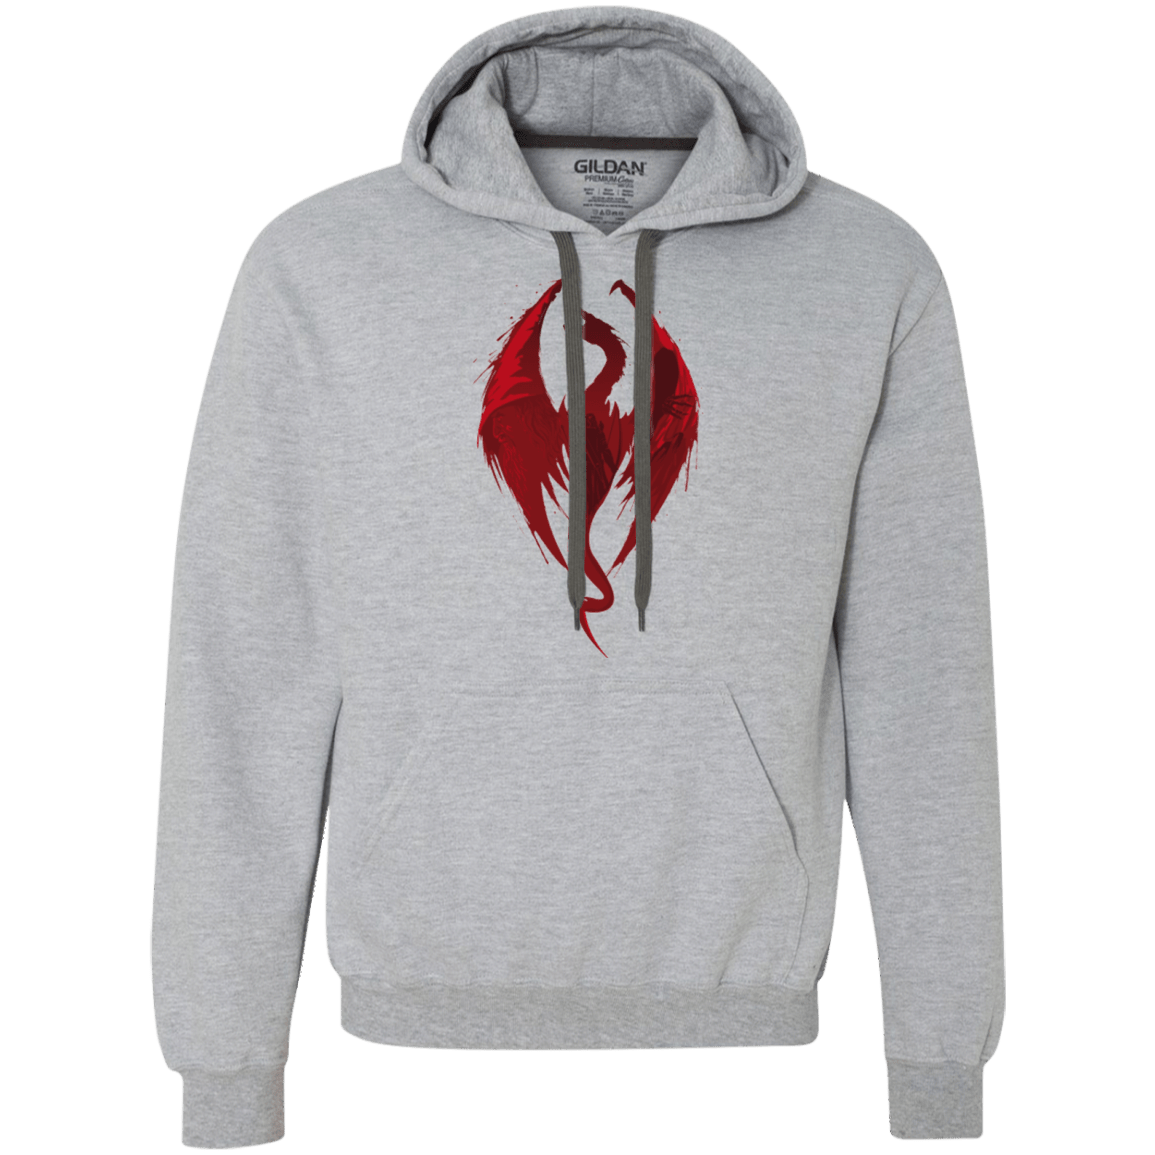 Sweatshirts Sport Grey / Small Smaug's Bane Premium Fleece Hoodie